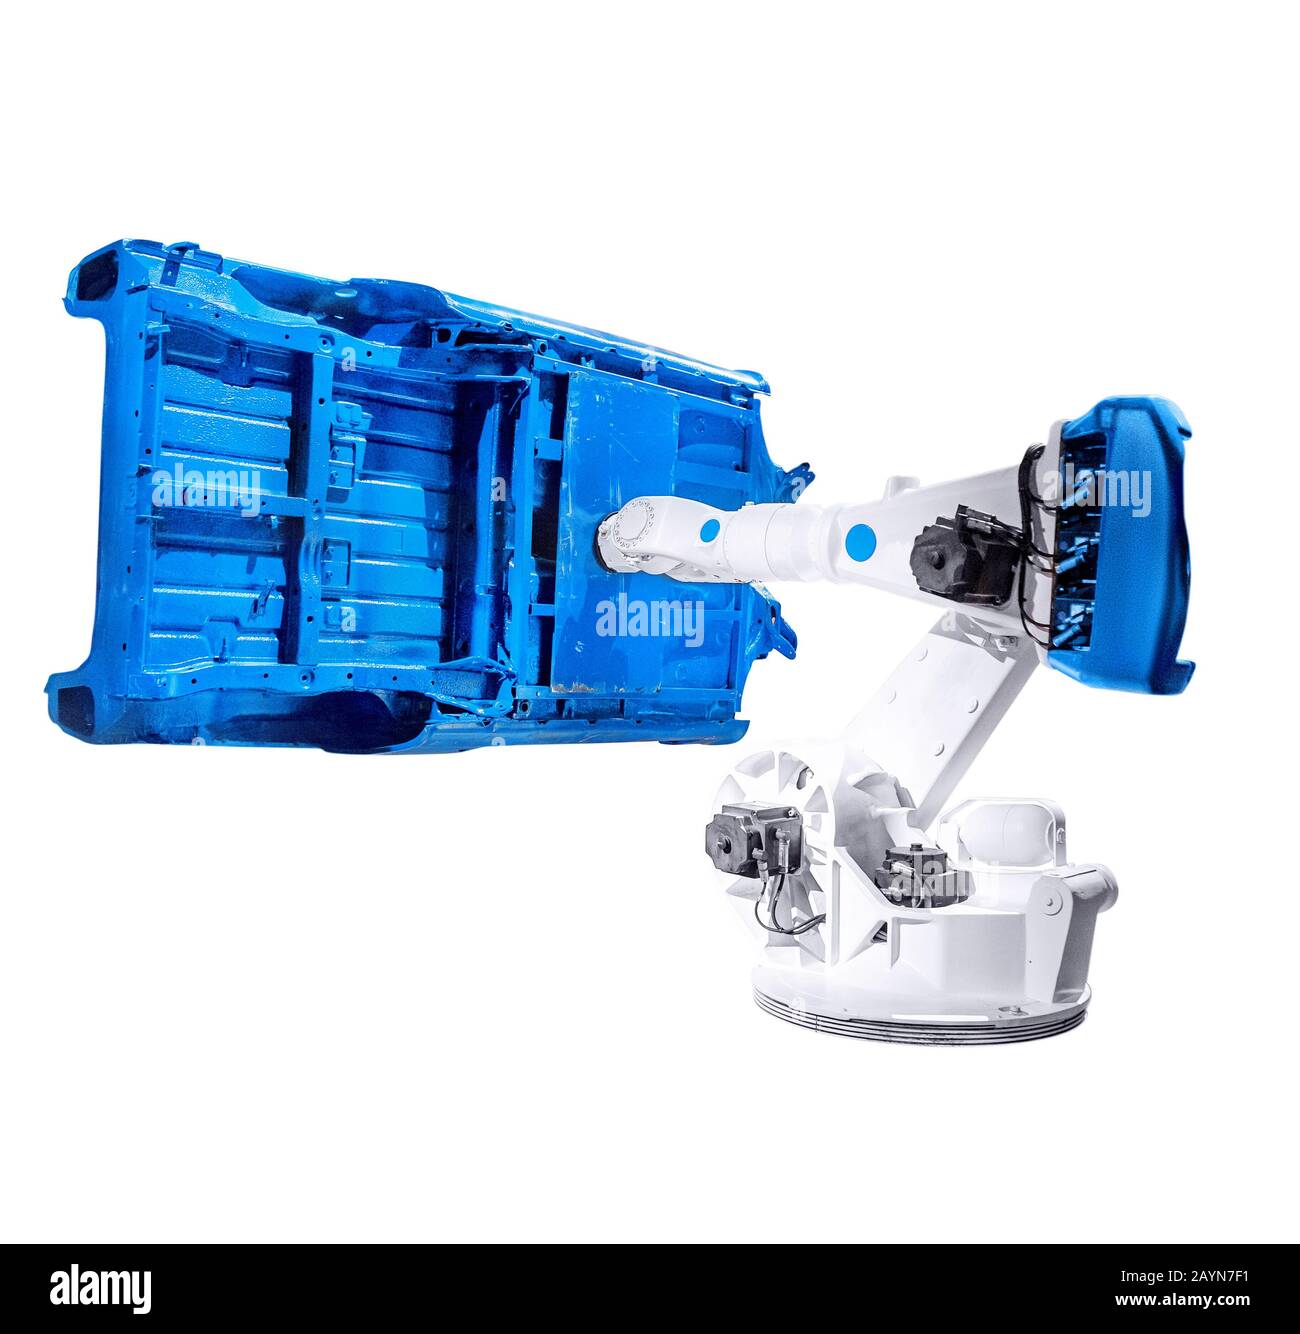 Le bras robotisé industriel isolé fonctionne avec le châssis en acier de voiture, le concept de technologie moderne en usine. Banque D'Images